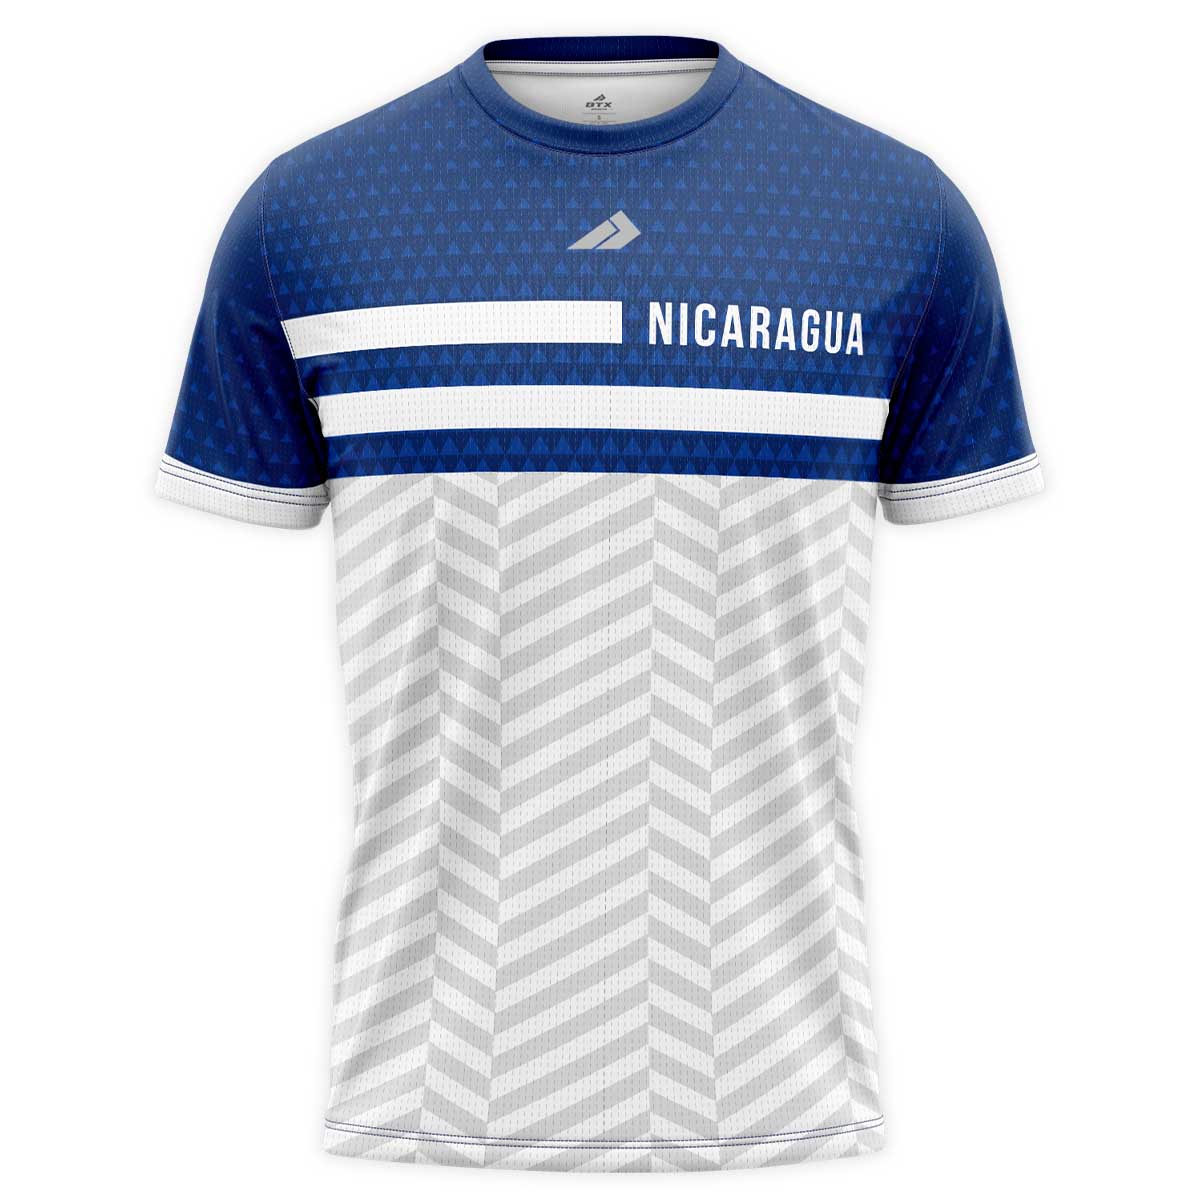 Camiseta de caballero cuello redondo Nicaragua Azul y Blanco